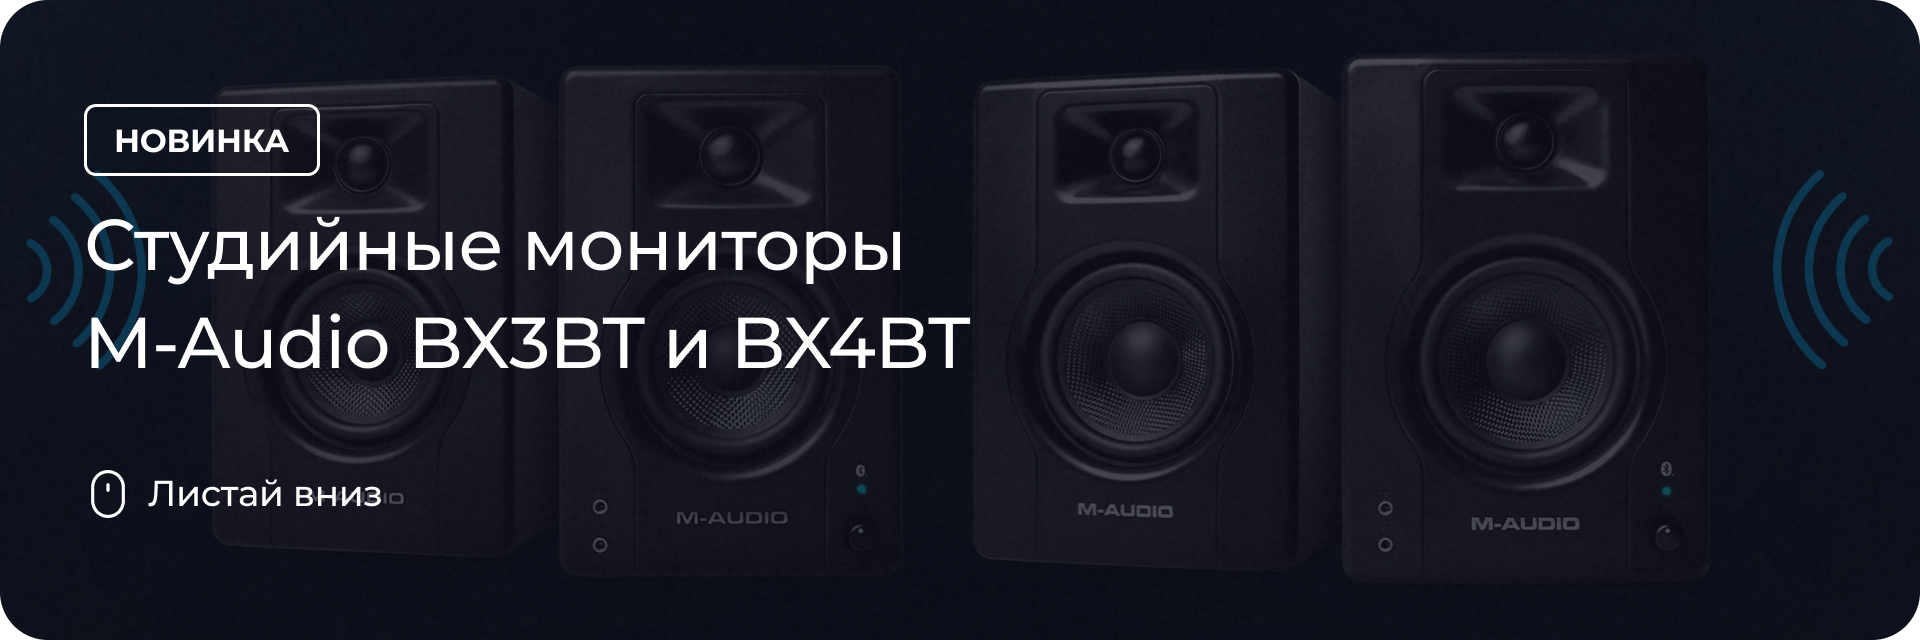 Студийные мониторы M-Audio BX3BT и BX4BT